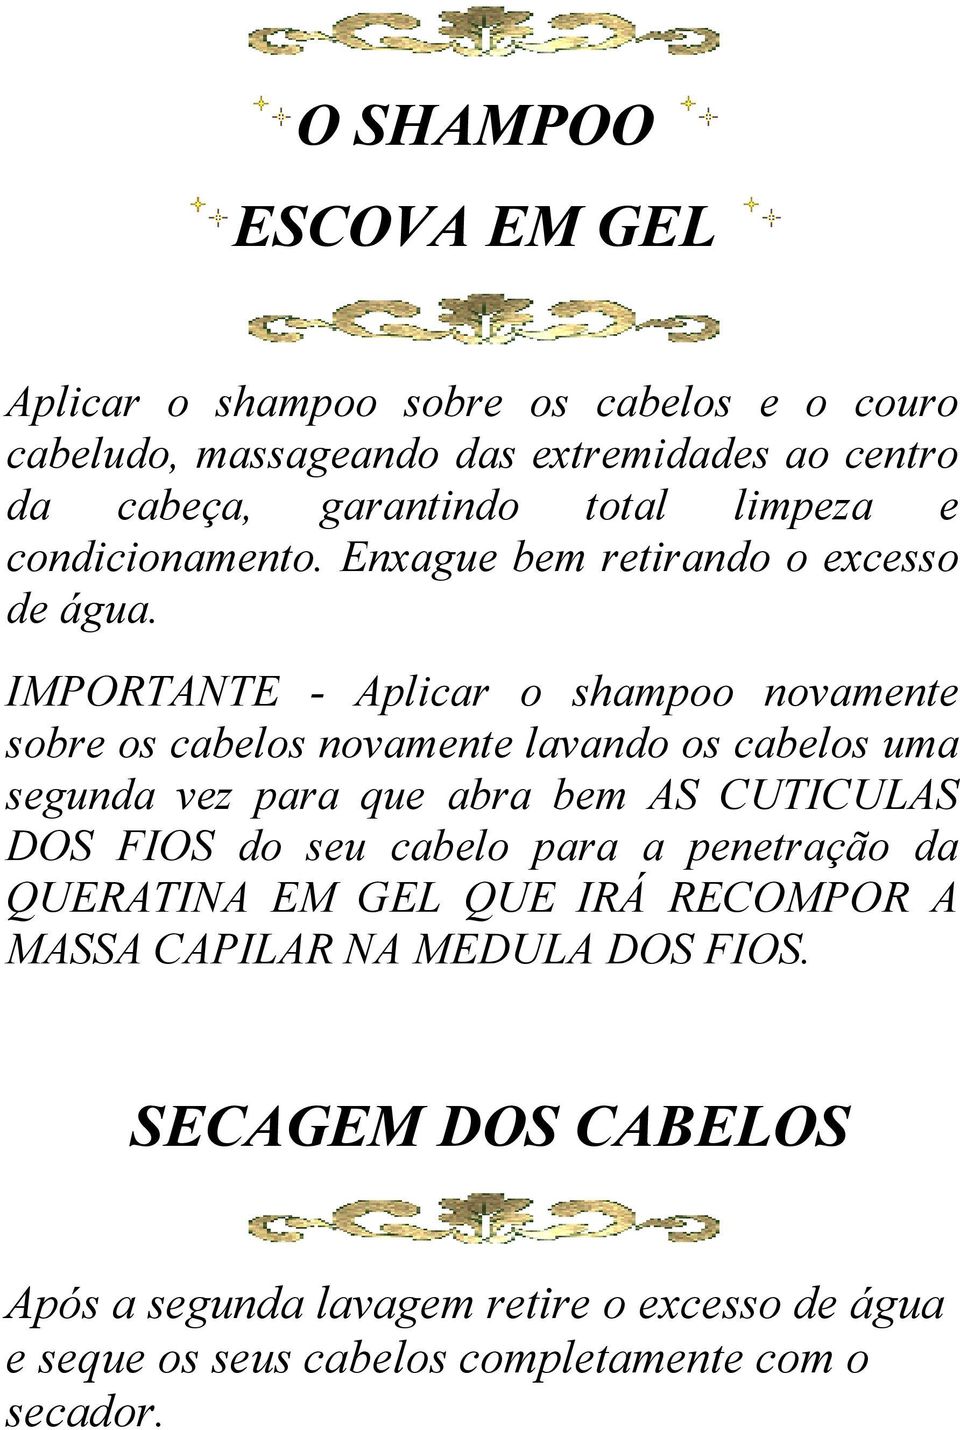 IMPORTANTE - Aplicar o shampoo novamente sobre os cabelos novamente lavando os cabelos uma segunda vez para que abra bem AS CUTICULAS DOS FIOS do